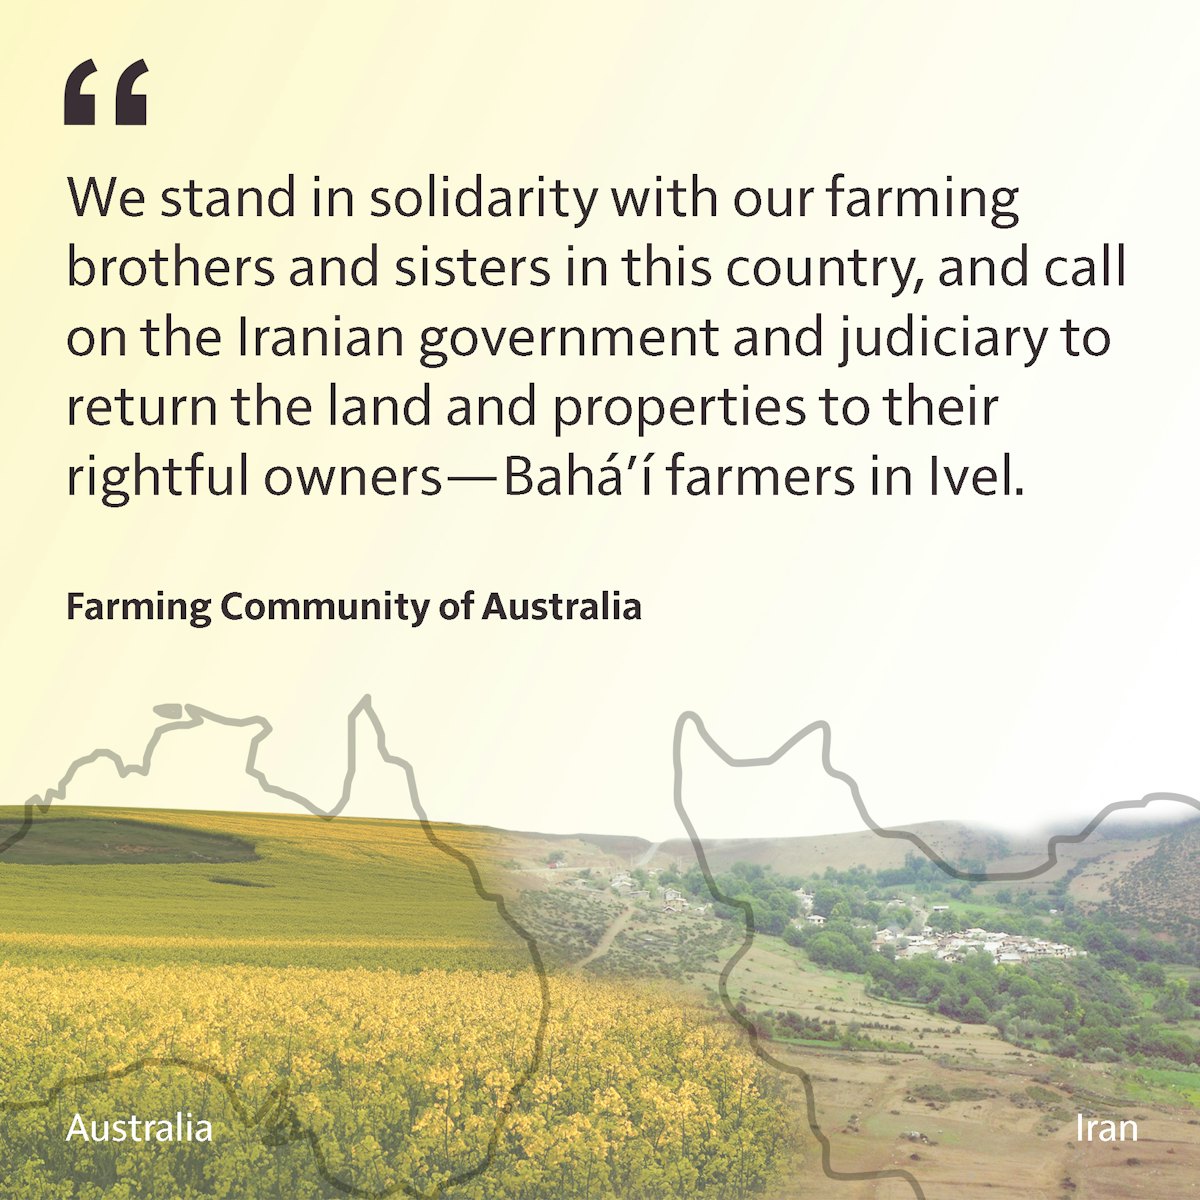 En un mensaje de vídeo, publicado en nombre de los miembros de la comunidad de agricultores de Australia, se describe el papel de un Gobierno solidario que apoya a sus comunidades agrarias, lo que contrasta duramente con el trato hostil que Irán depara a la «pacífica comunidad bahá’í» del país.